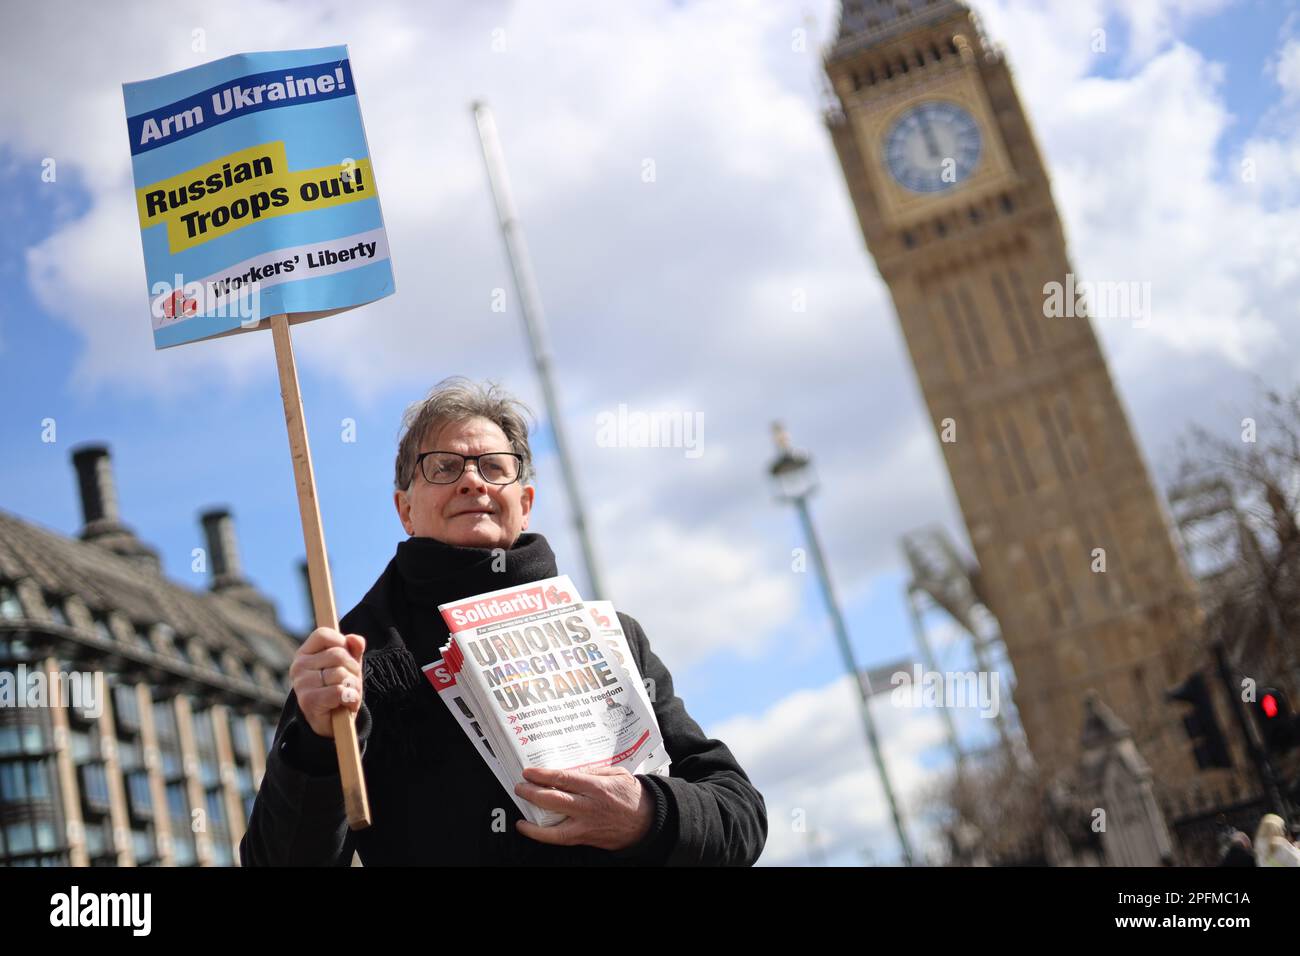 Westminster, Londres, Reino Unido - Un manifestante asiste a una marcha organizada por los sindicatos británicos para denunciar la invasión rusa de Ucrania el 9 de abril de 2022. Foto de stock